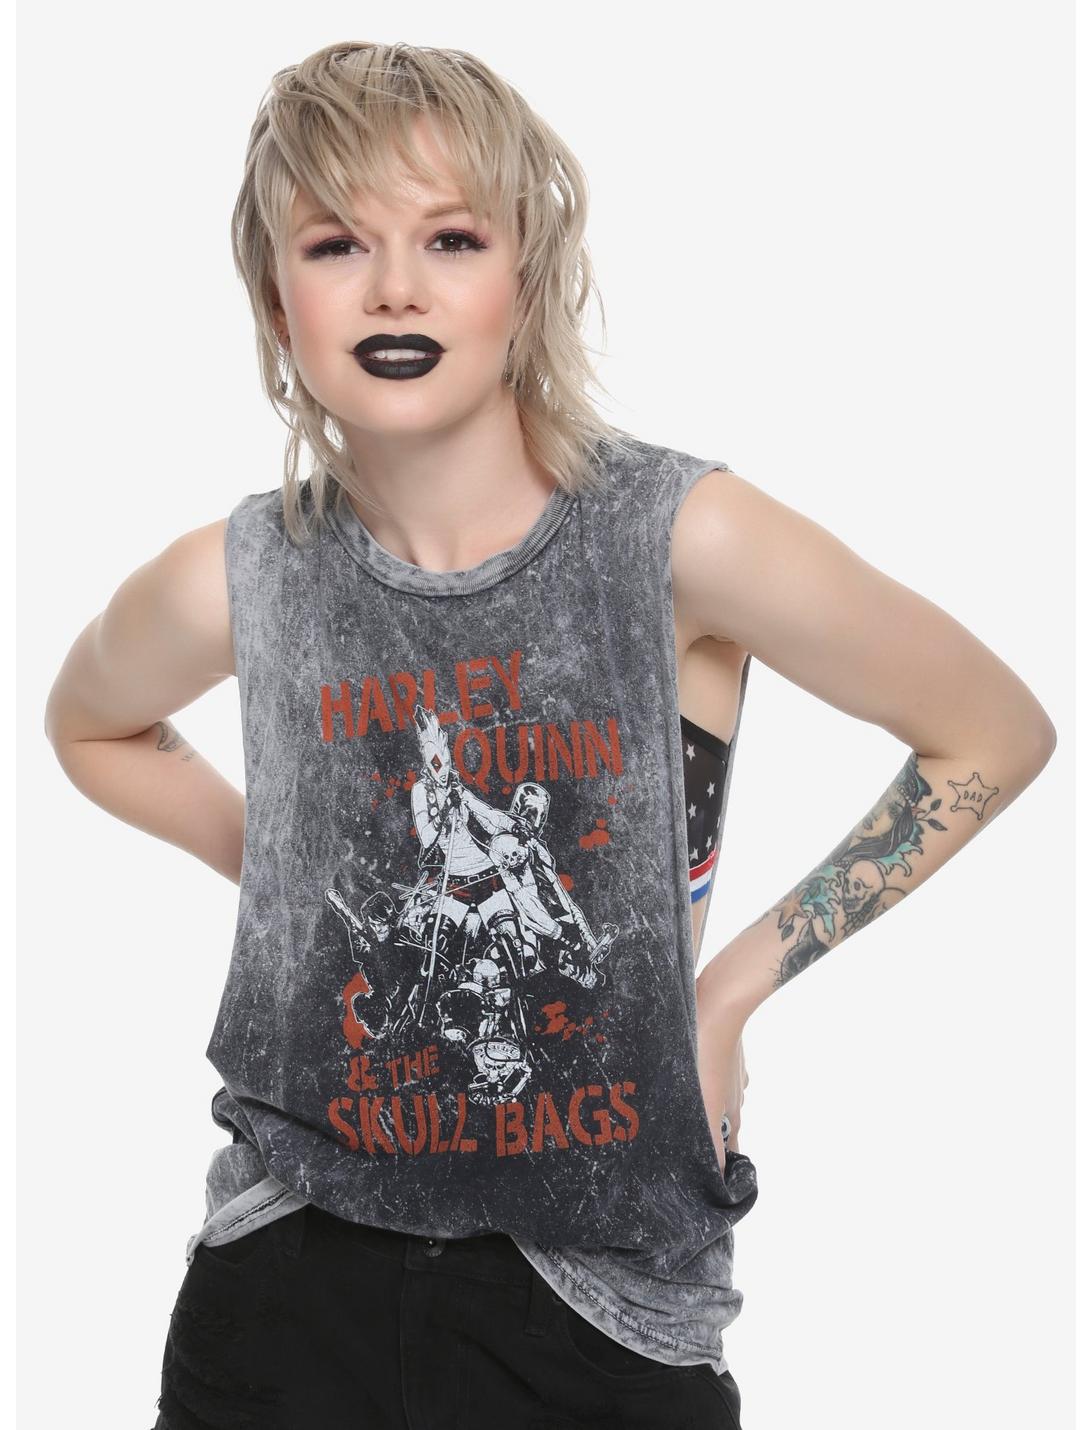 DC Comics Harley Quinn & The Skull Bags Girls Muscle Top, BLACK, hi-res